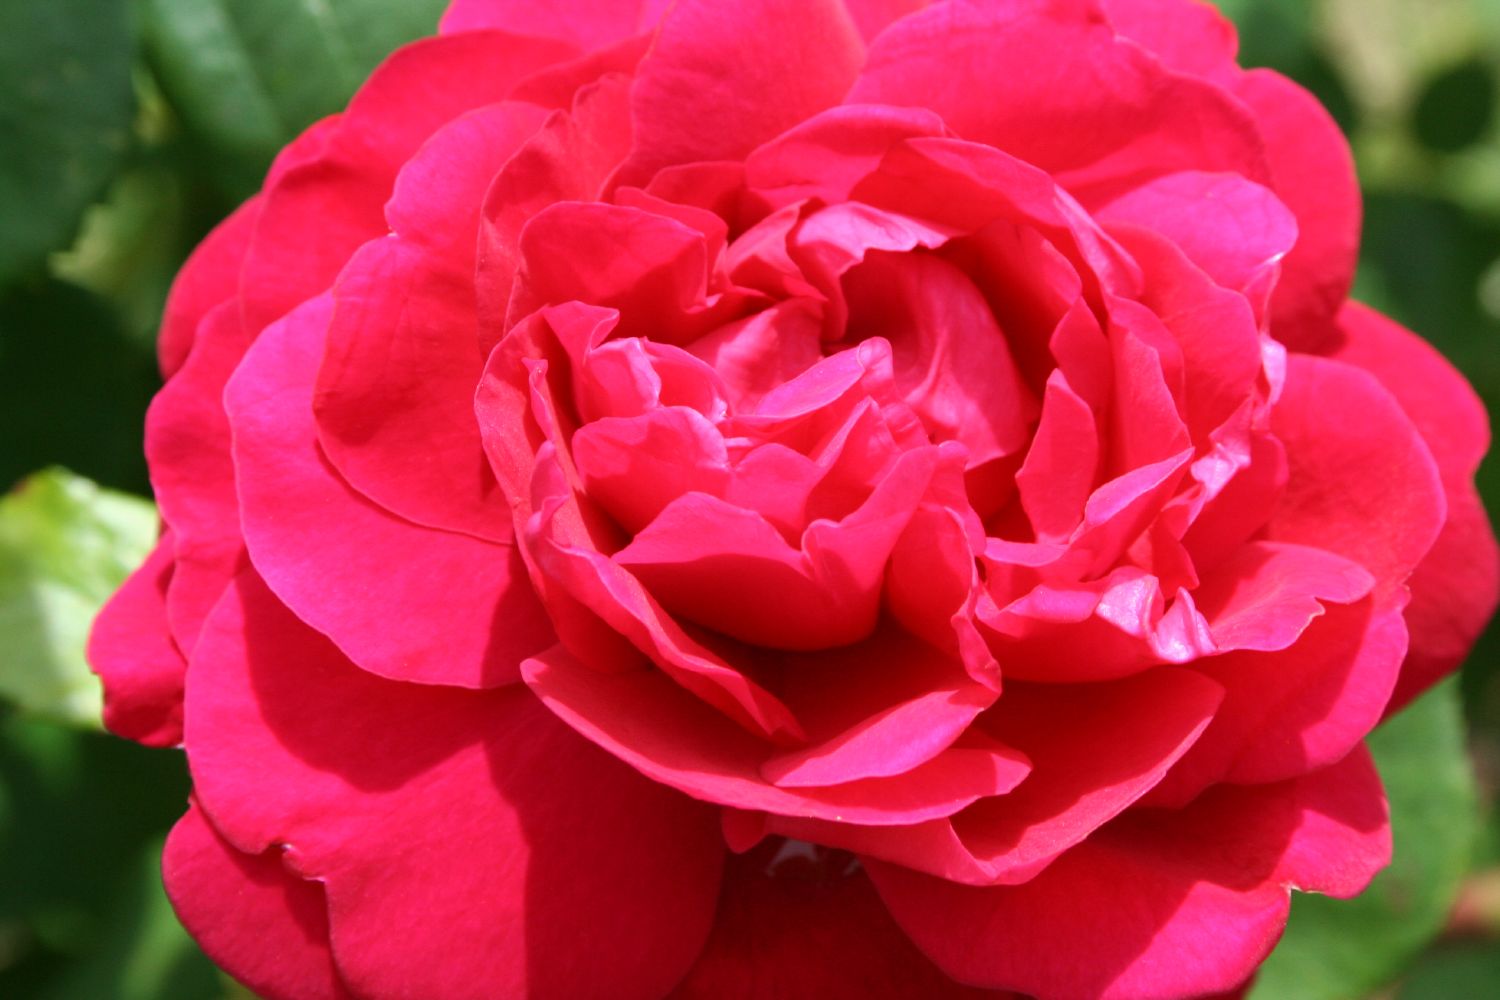 Rose 'Tess of the D'Urbervilles' Englische Rose